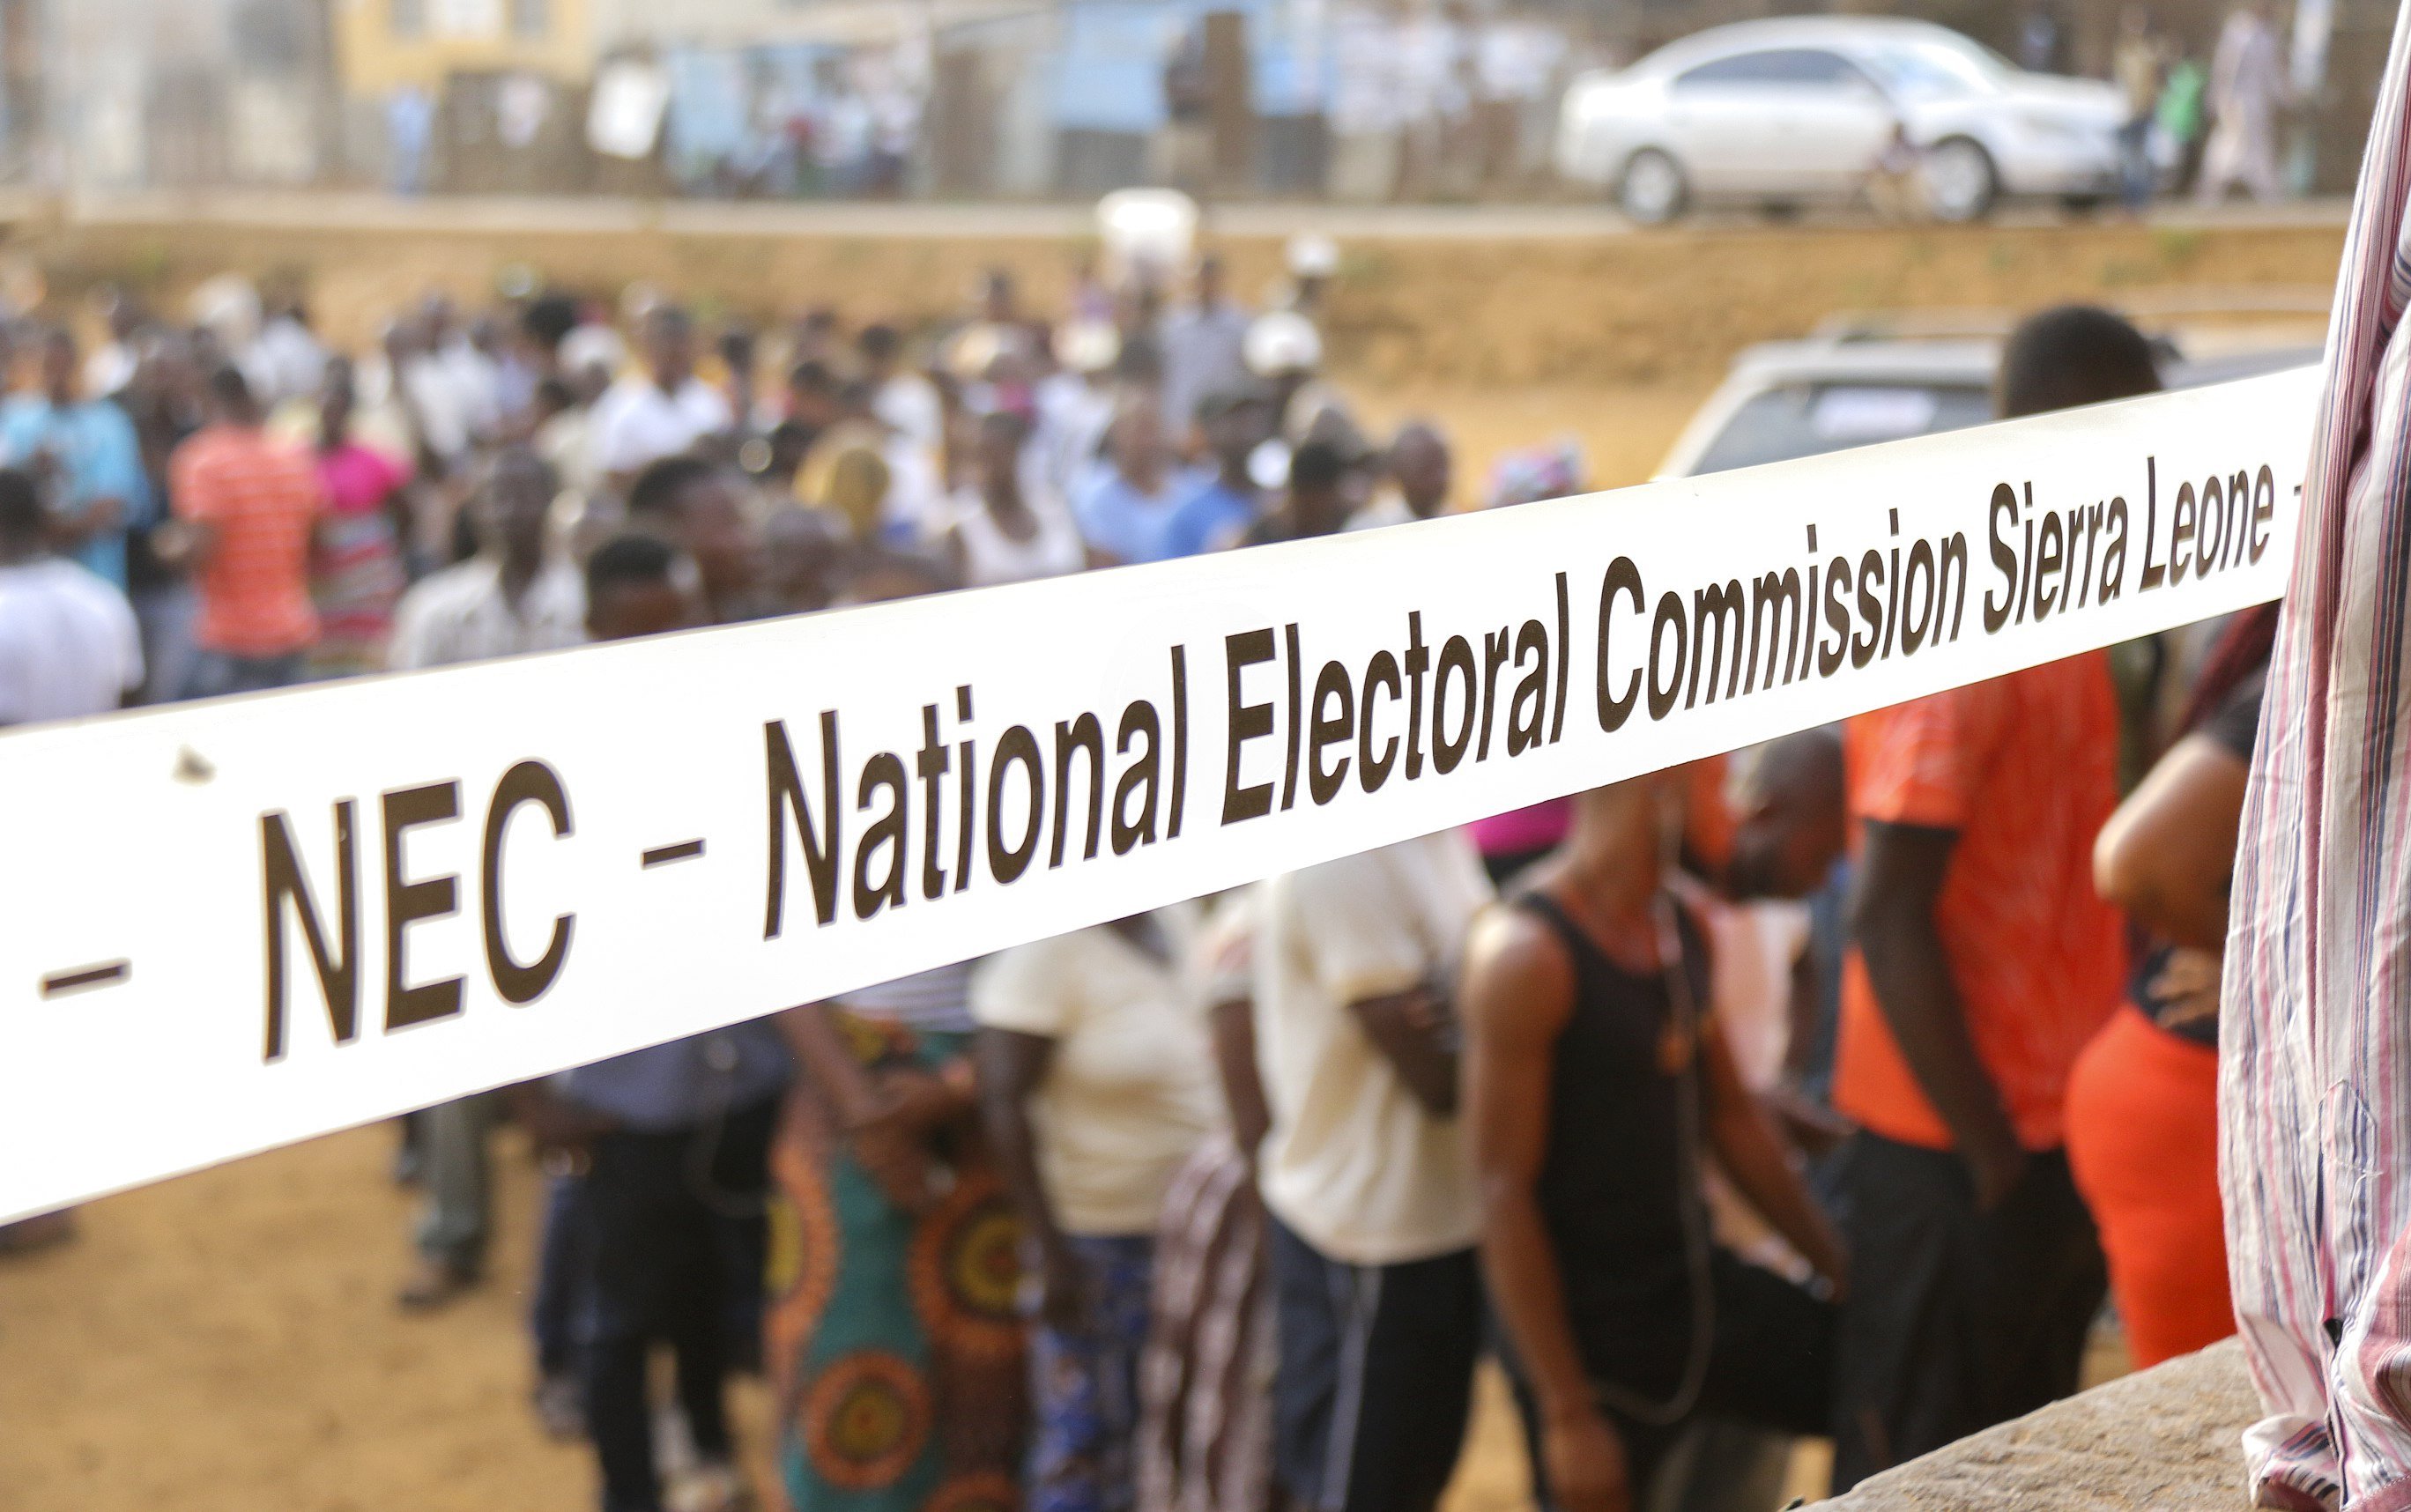 Segunda volta as eleições na Serra Leoa a 27 de março